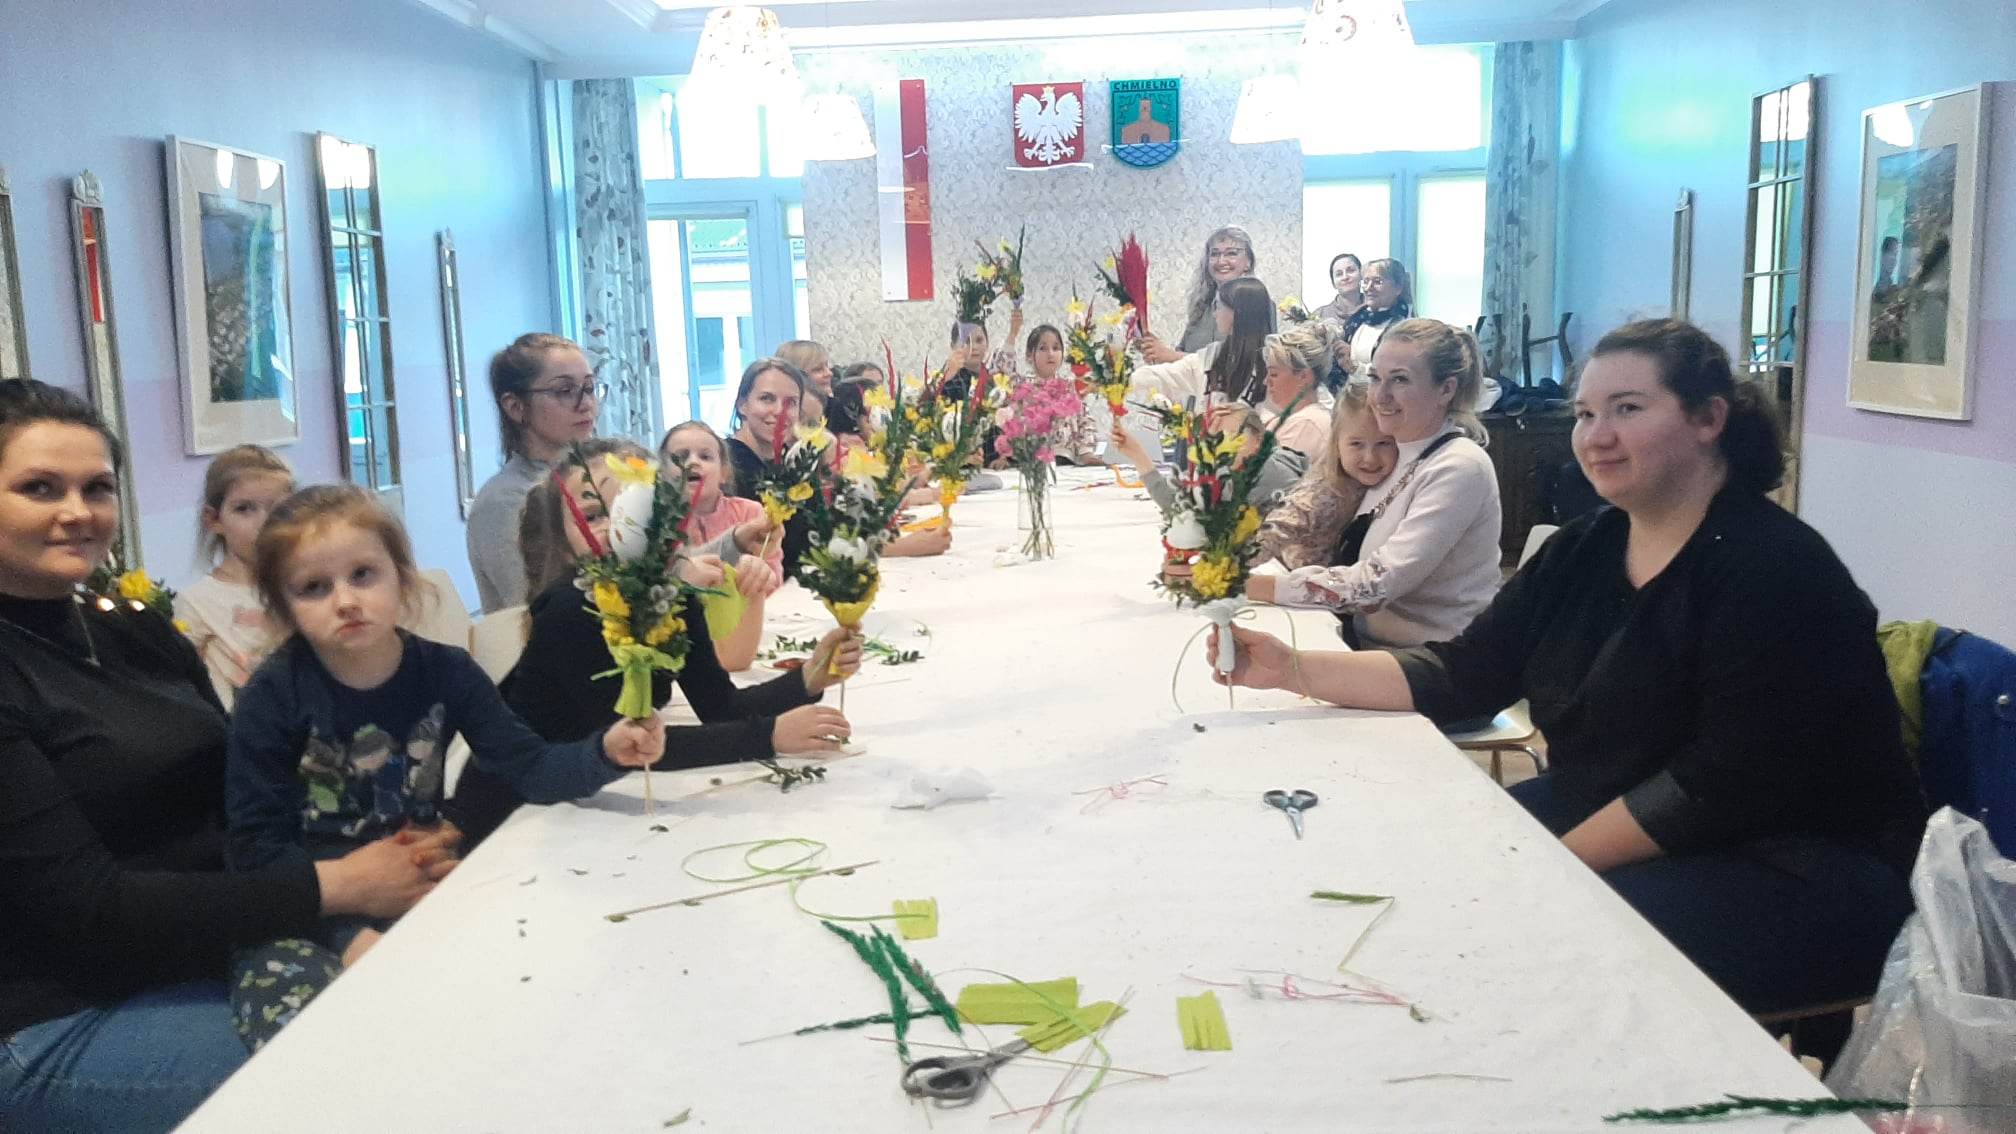 Grupa osób w różnym wieku siedząca przy stole, wyplatająca Palmy Wielkanocne